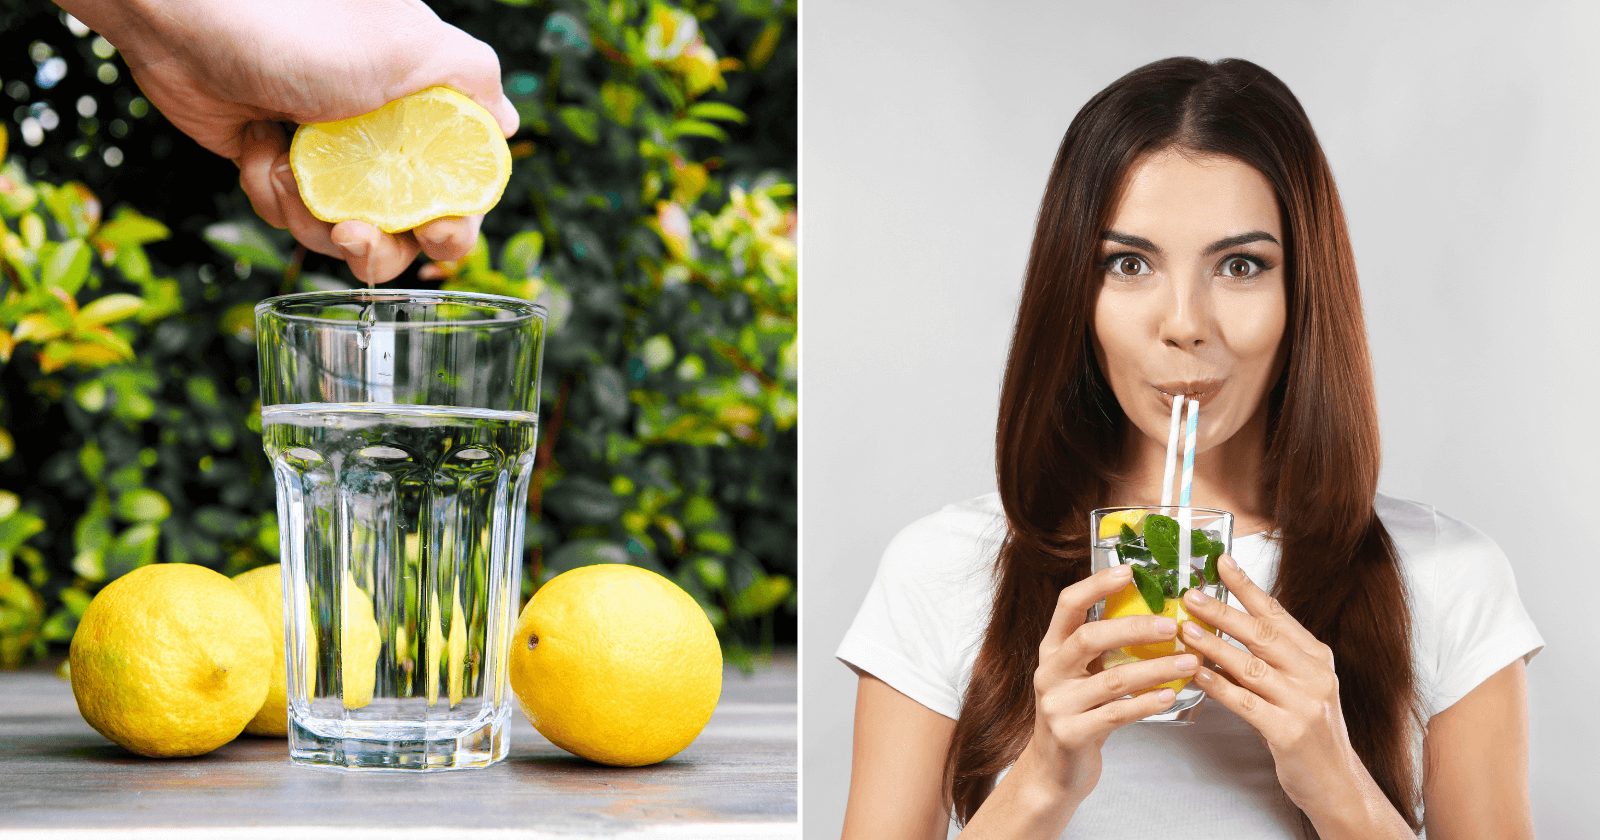 Água morna com limão: quando tomar? Use todos os benefícios corretamente